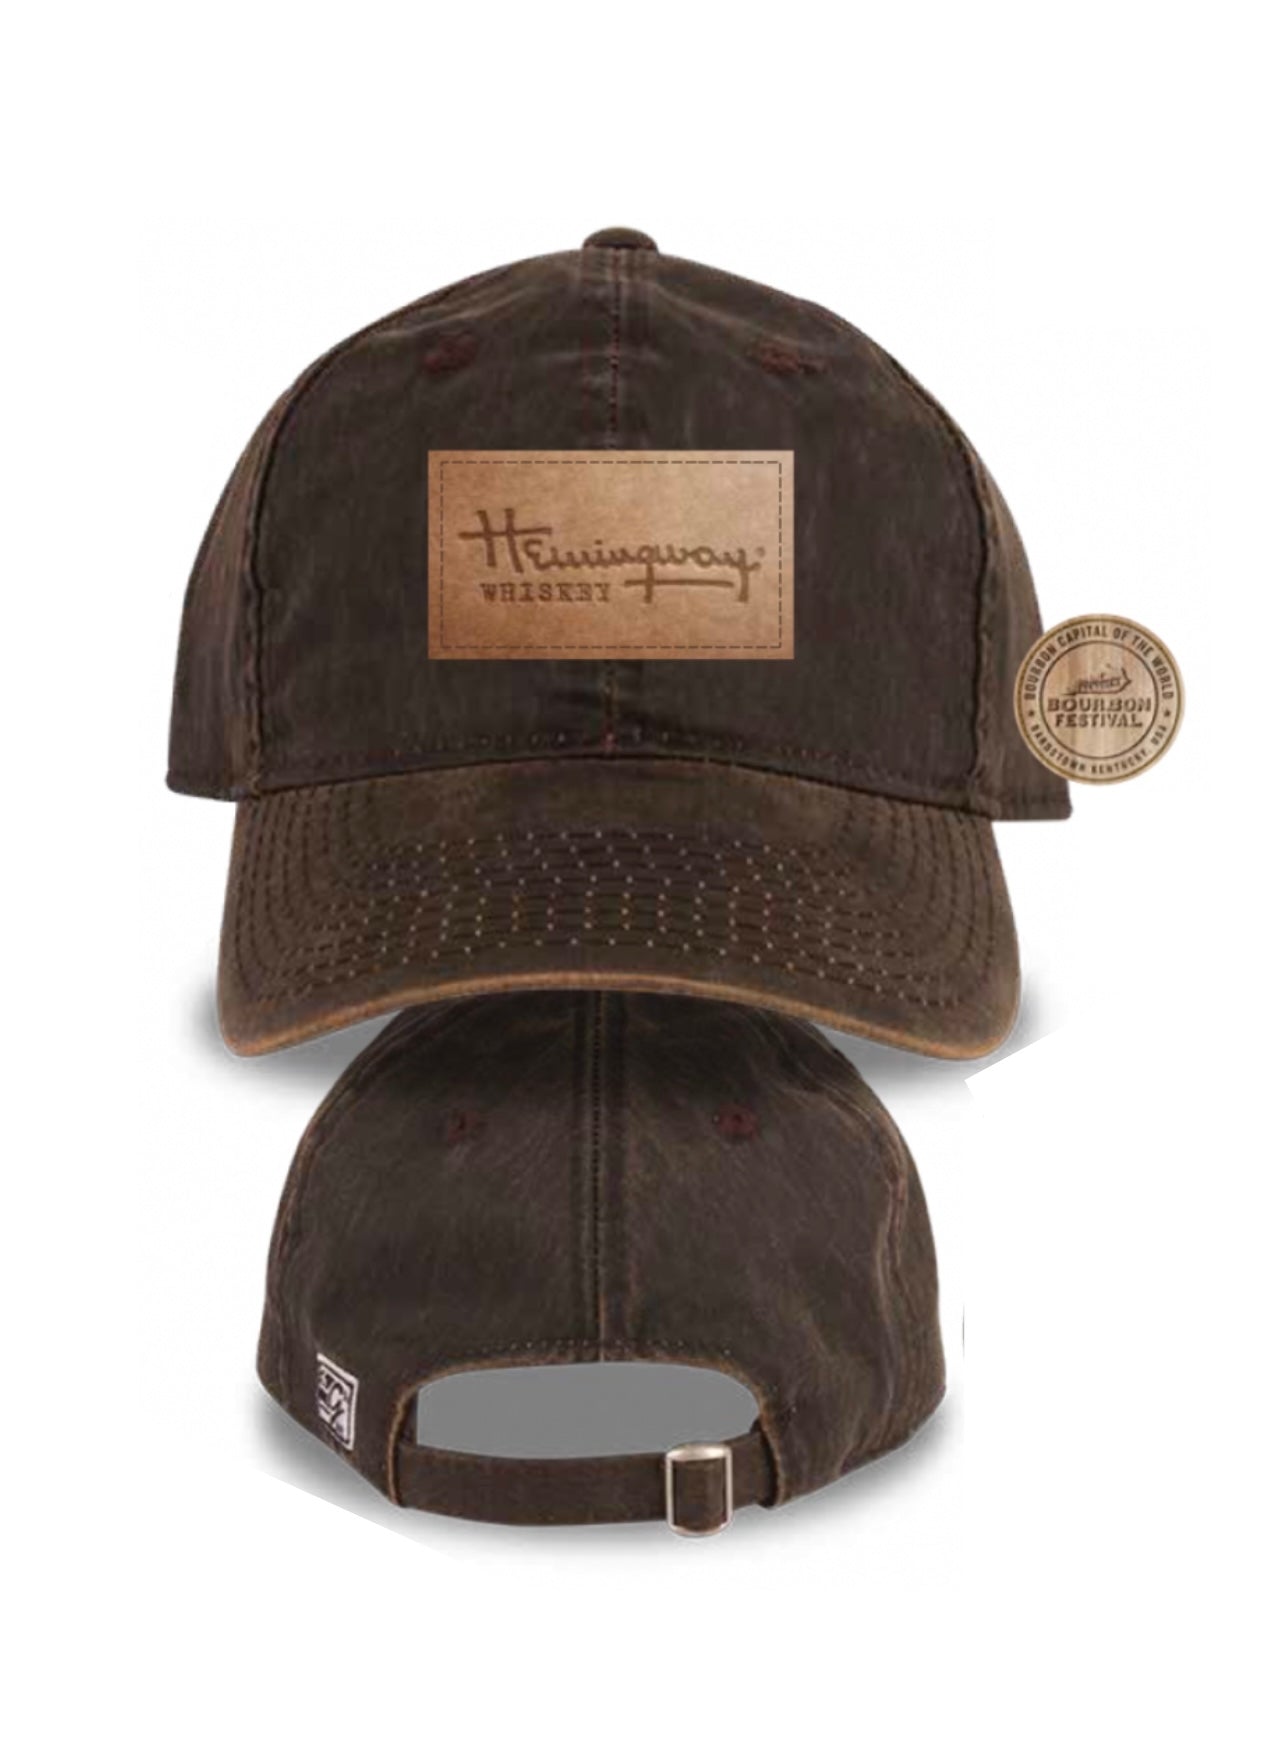 Hemingway Whiskey KBF Hat